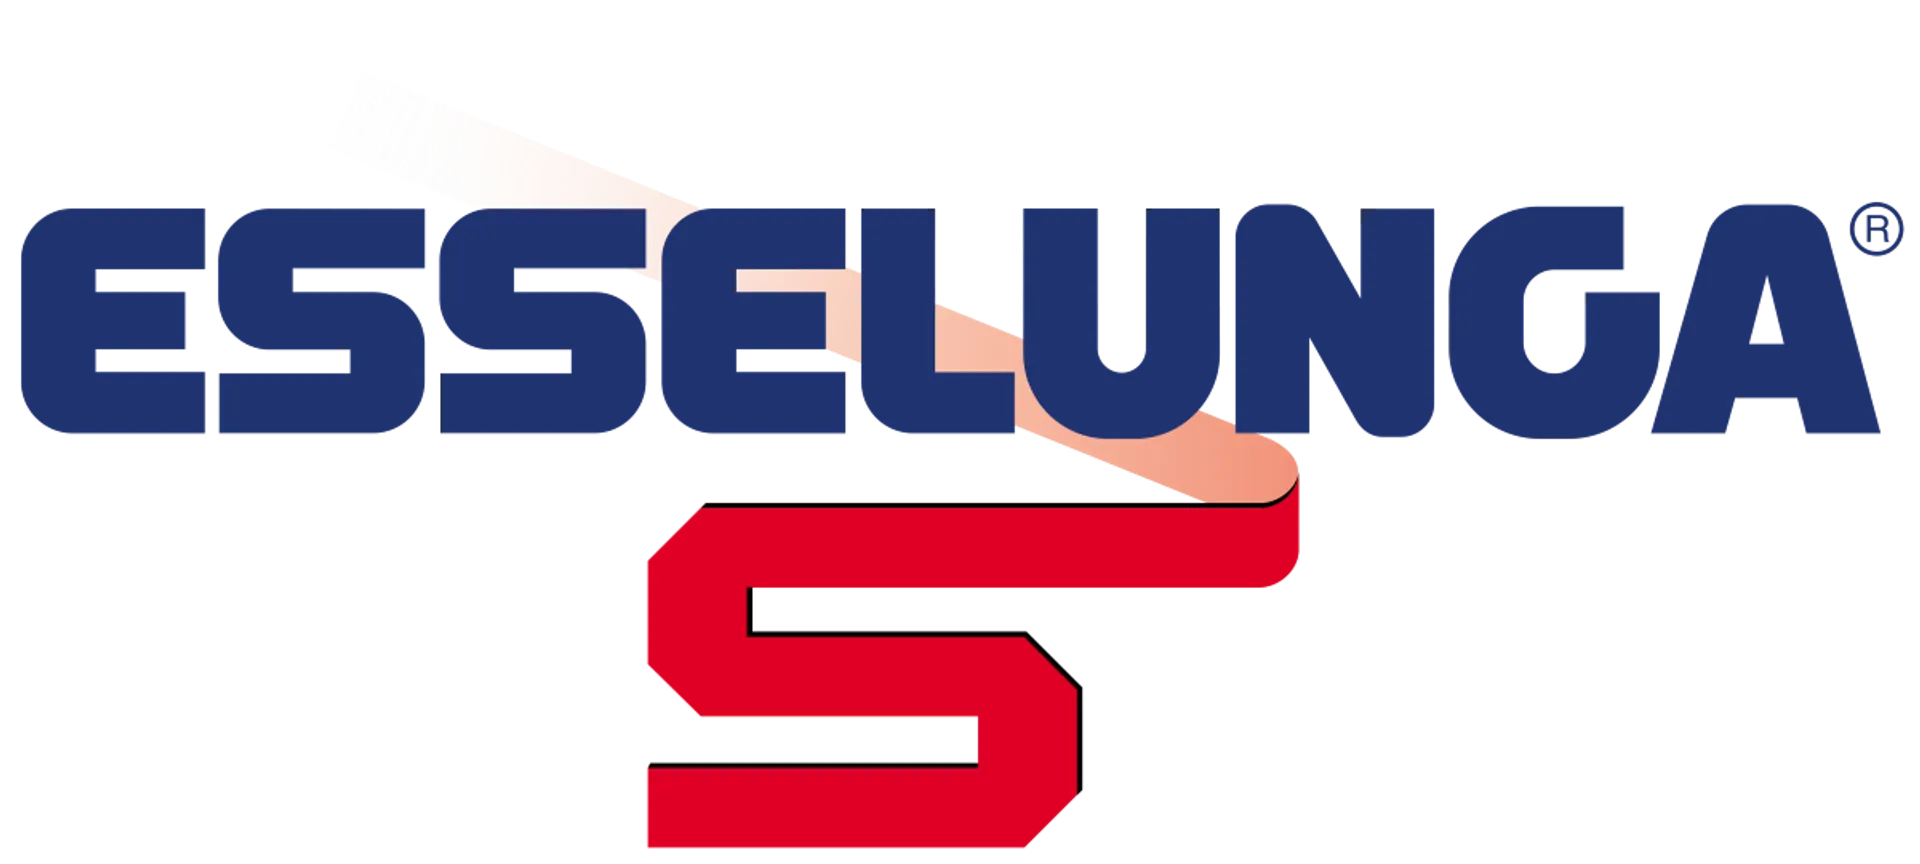 ESSELUNGA logo